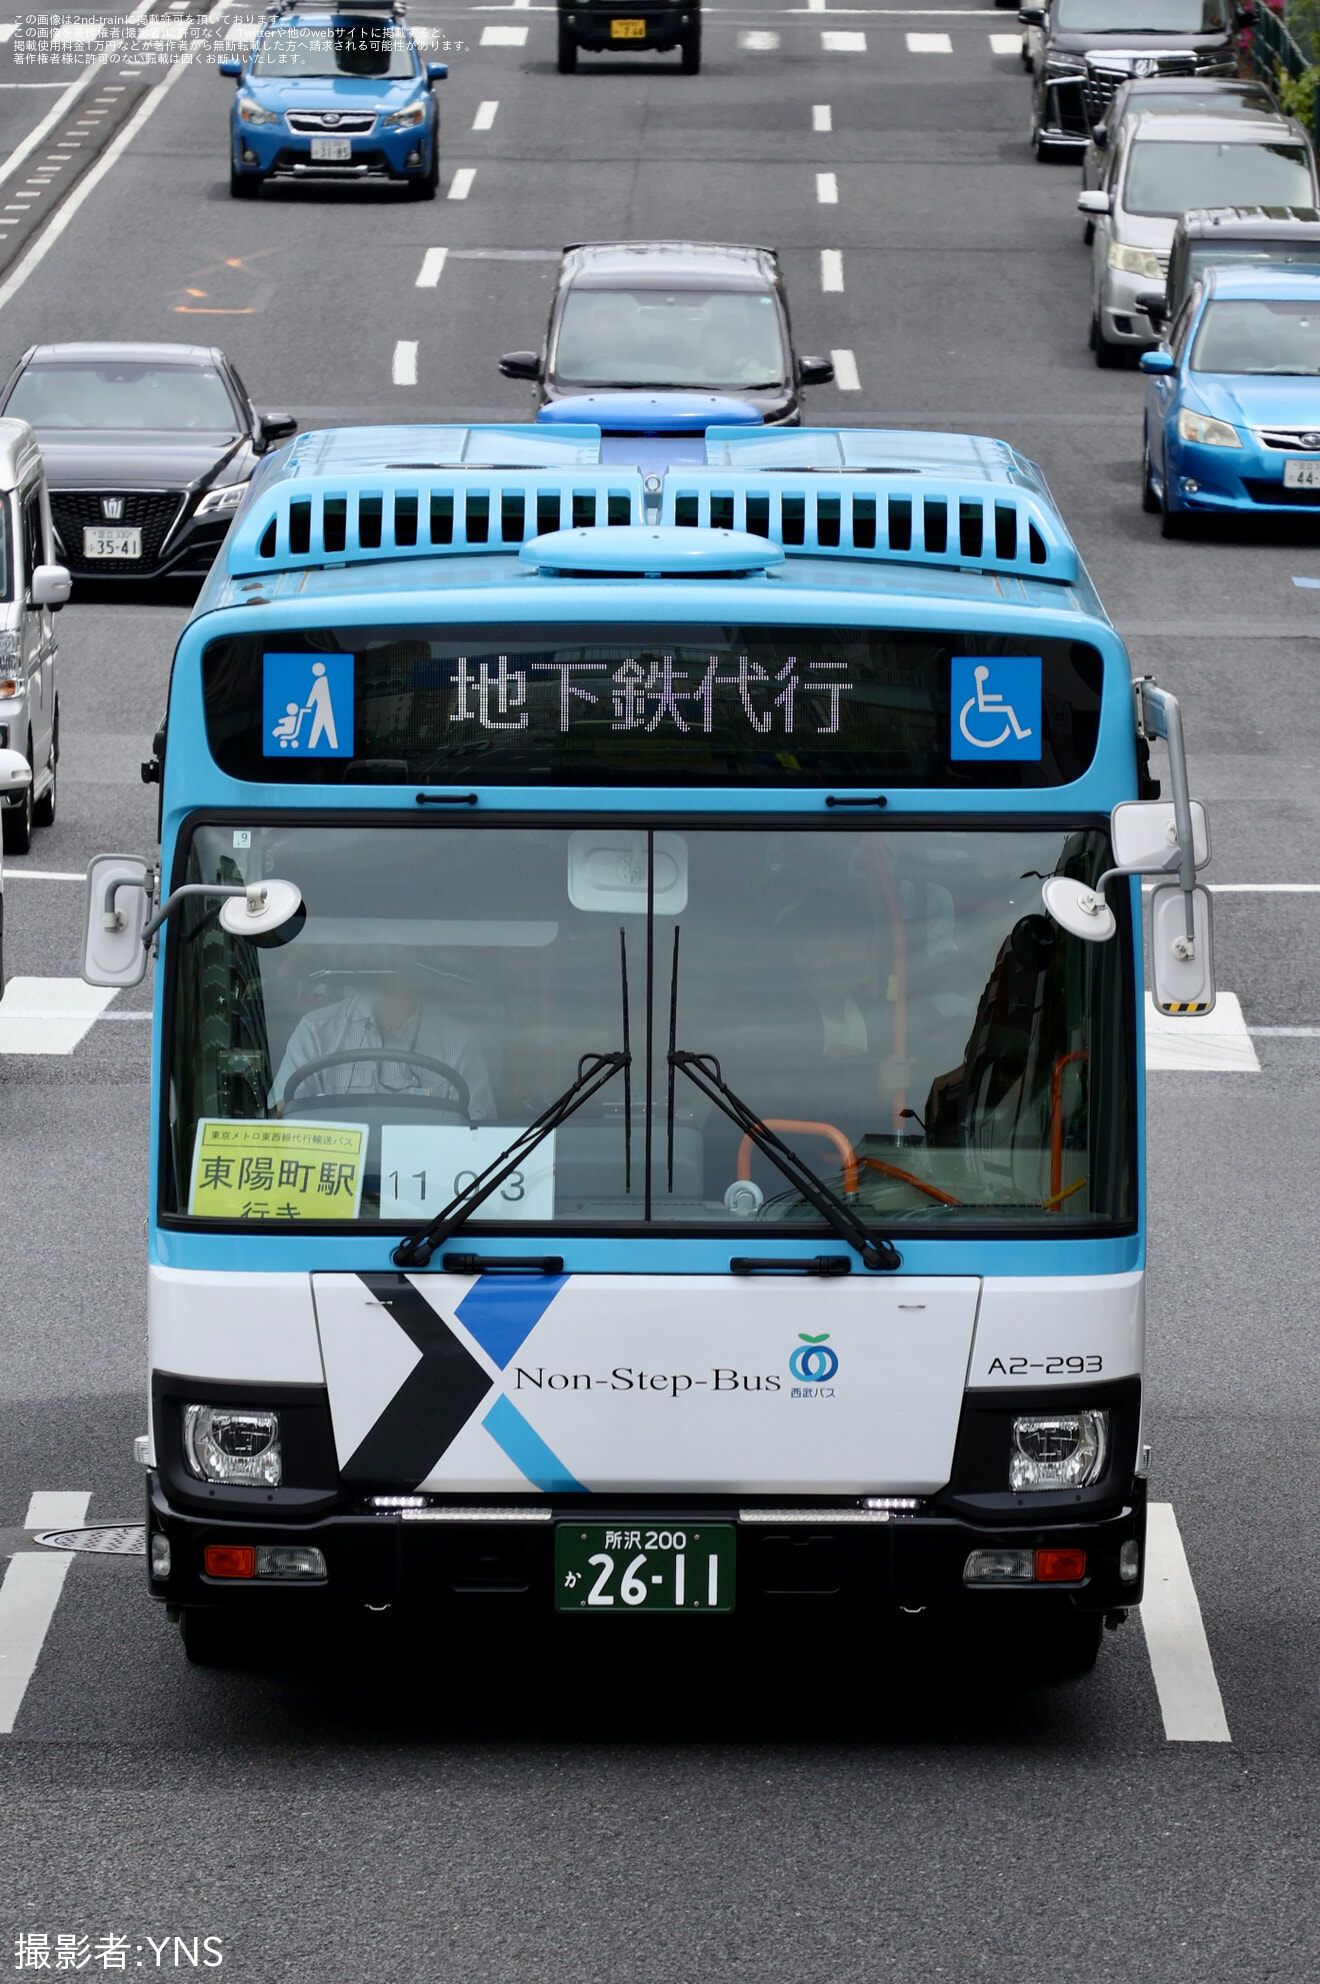 【メトロ】東西線線路切り替え工事に伴いバス代行輸送が実施の拡大写真